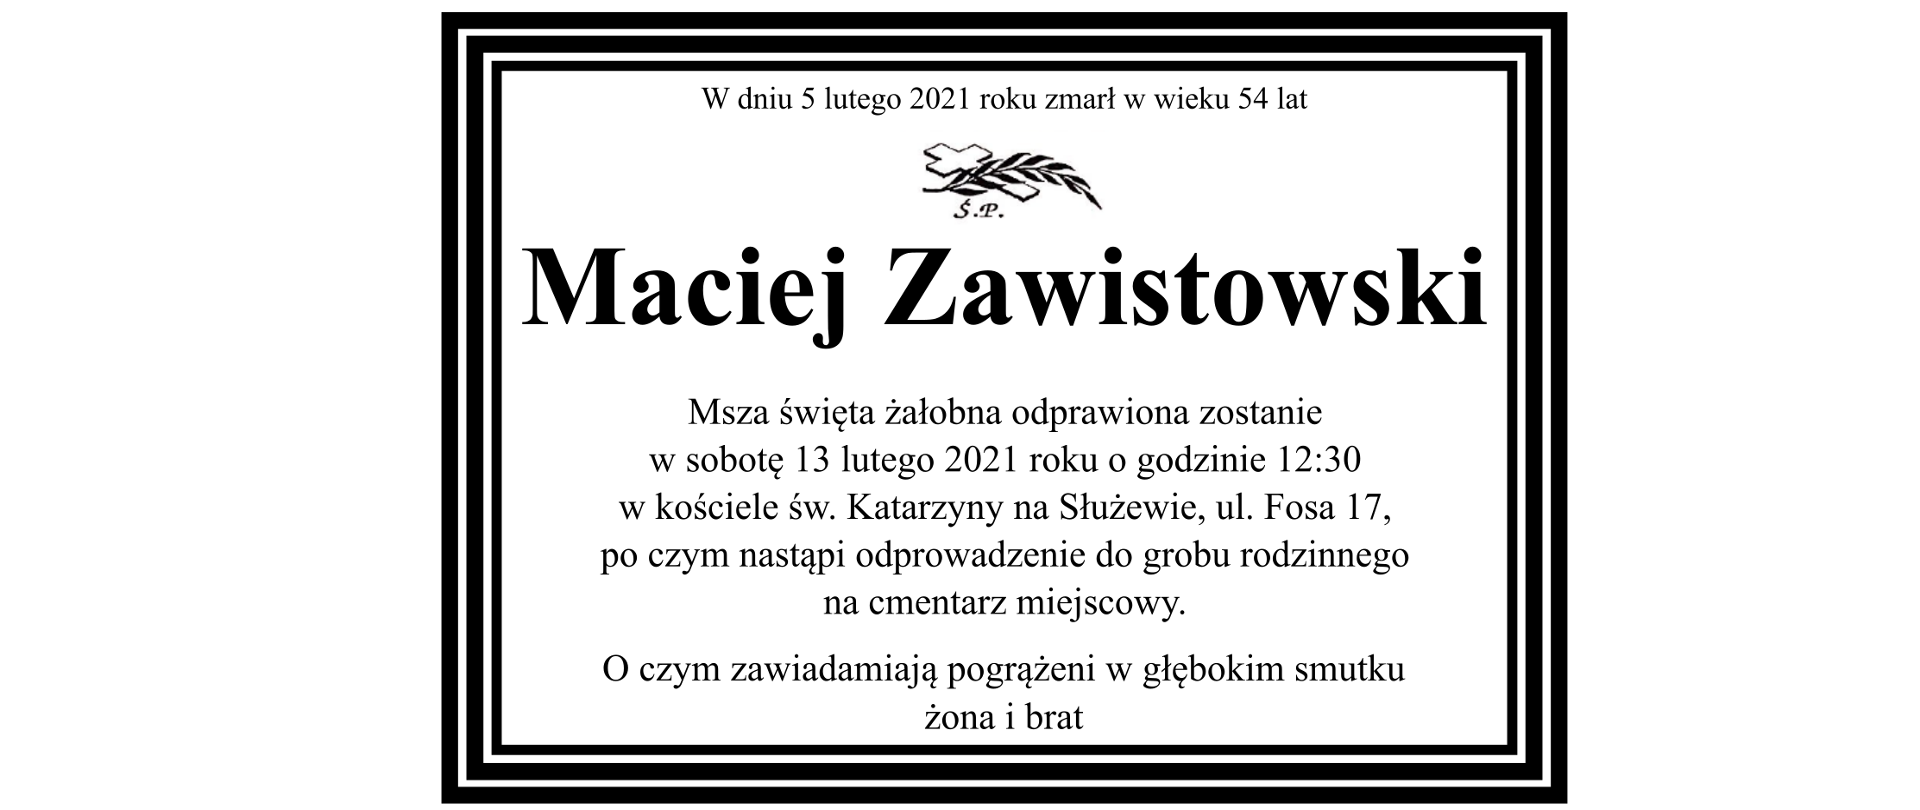 W dniu 5 lutego zmarł w wieku 54 lat Maciej Zawistowski. Msza święta żałobna odprawiona zostanie w sobotę 13 lutego 2021 roku o godzinie 12.:30 w kościele przy ul. Fosa 17 po czym nastąpi odprowadzenie do grobu rodzinnego na cmentarz miejscowy. O czym zawiadamiają pogrążeni w głębokim smutku żona i brat.